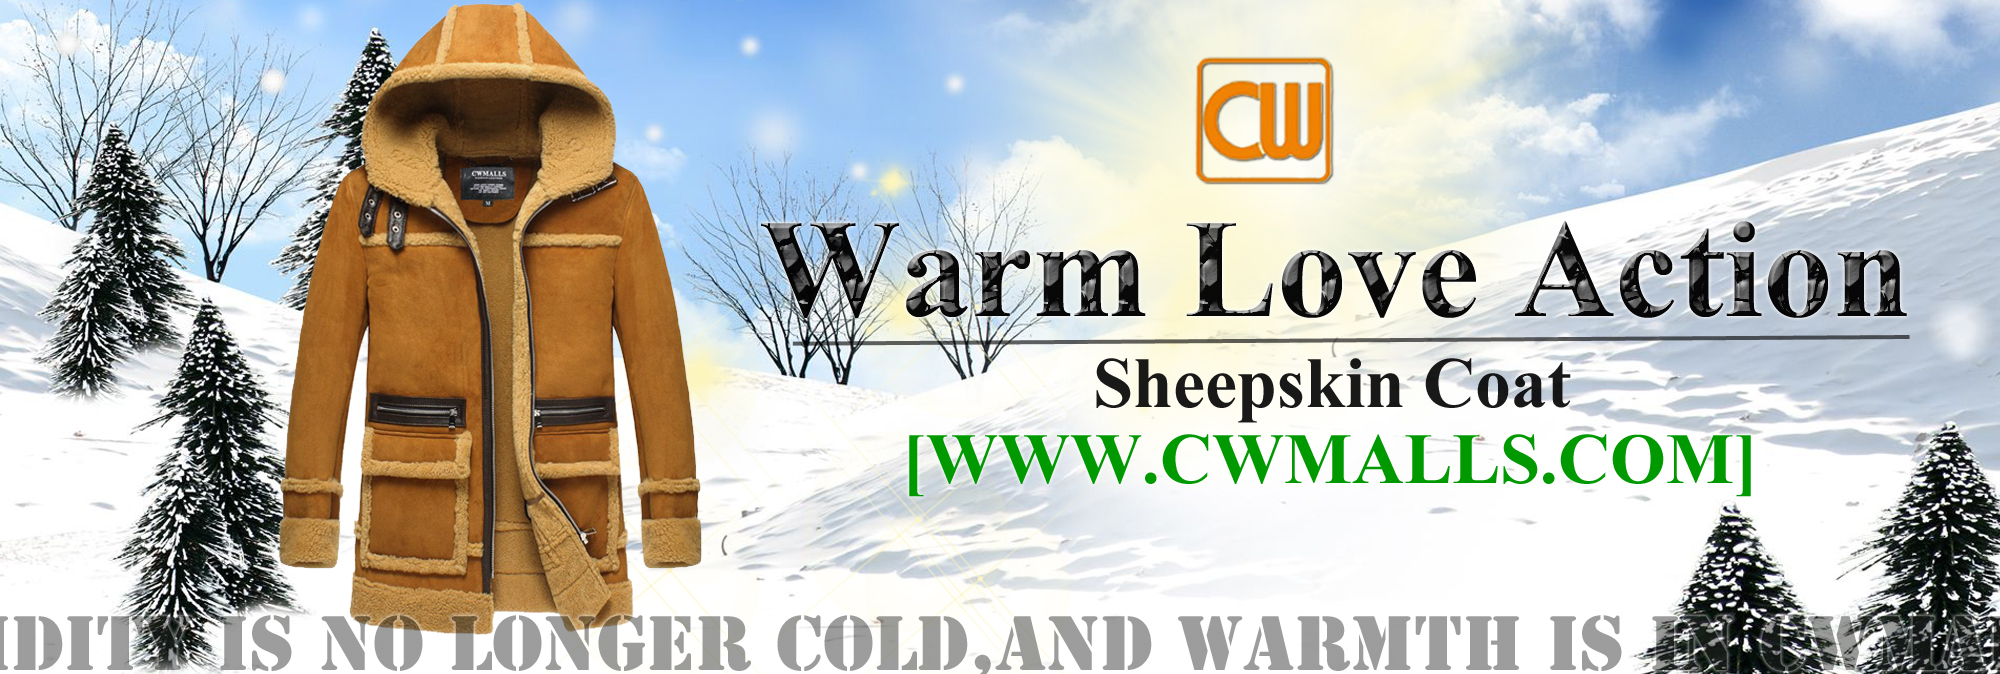 CWMALLS Warm Love Action